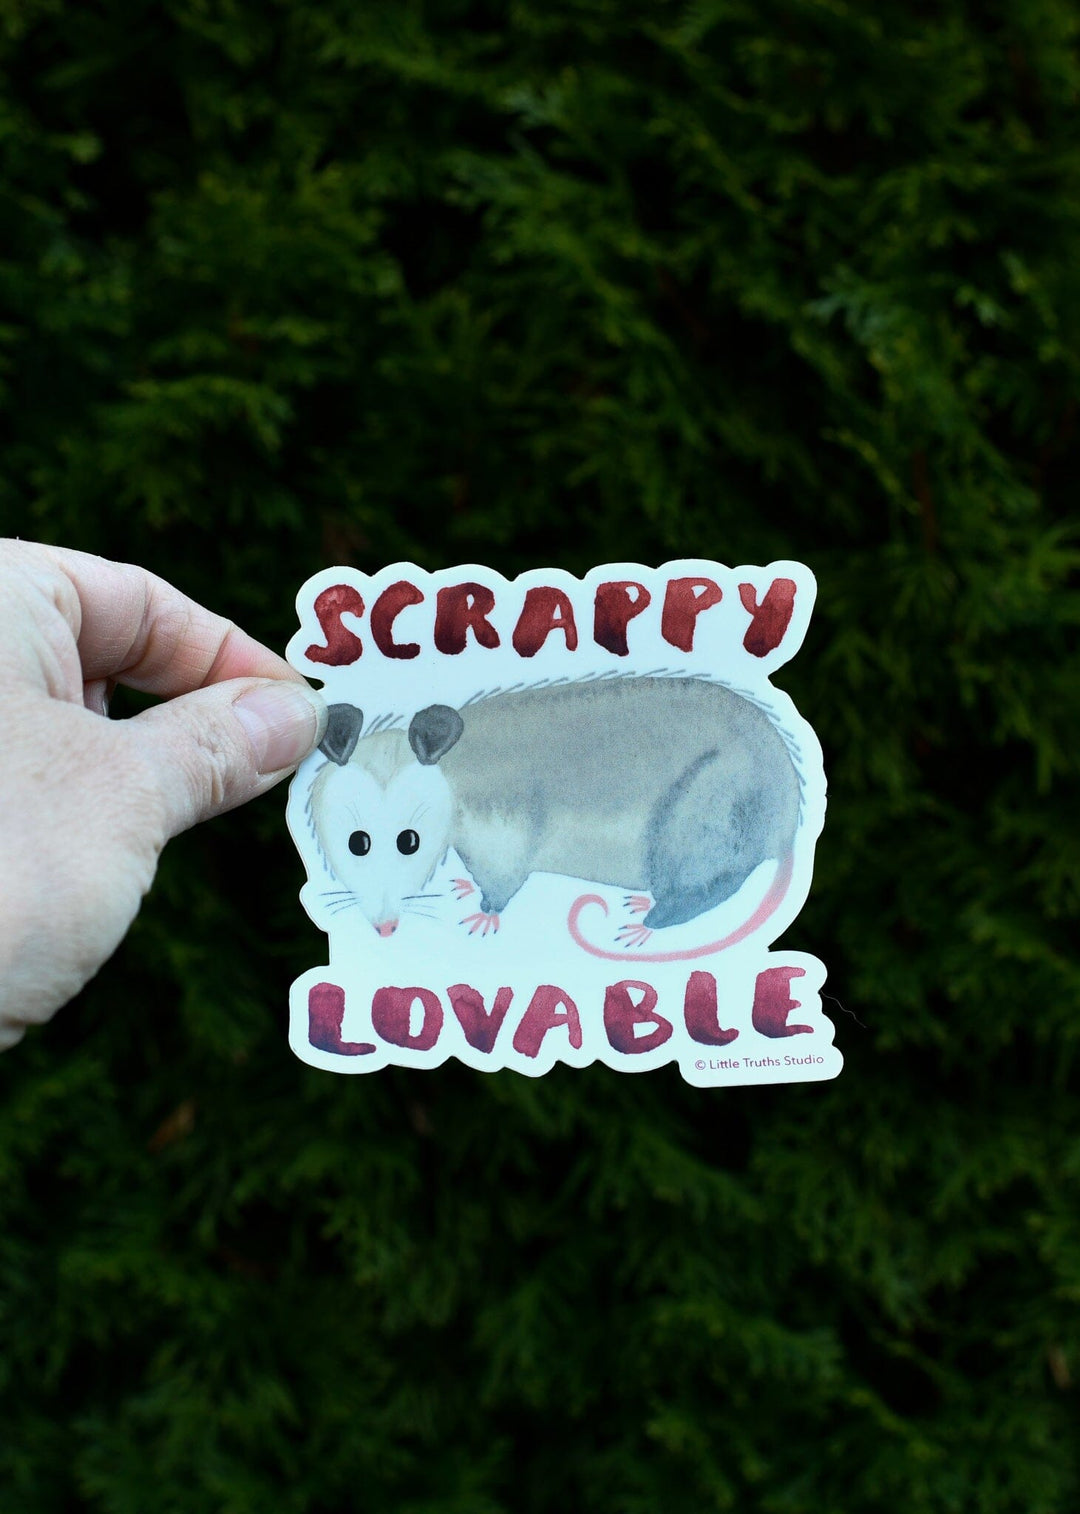 Scrappy, Lovable Possum Vinyl Sticker stickers Little Truths Studio 